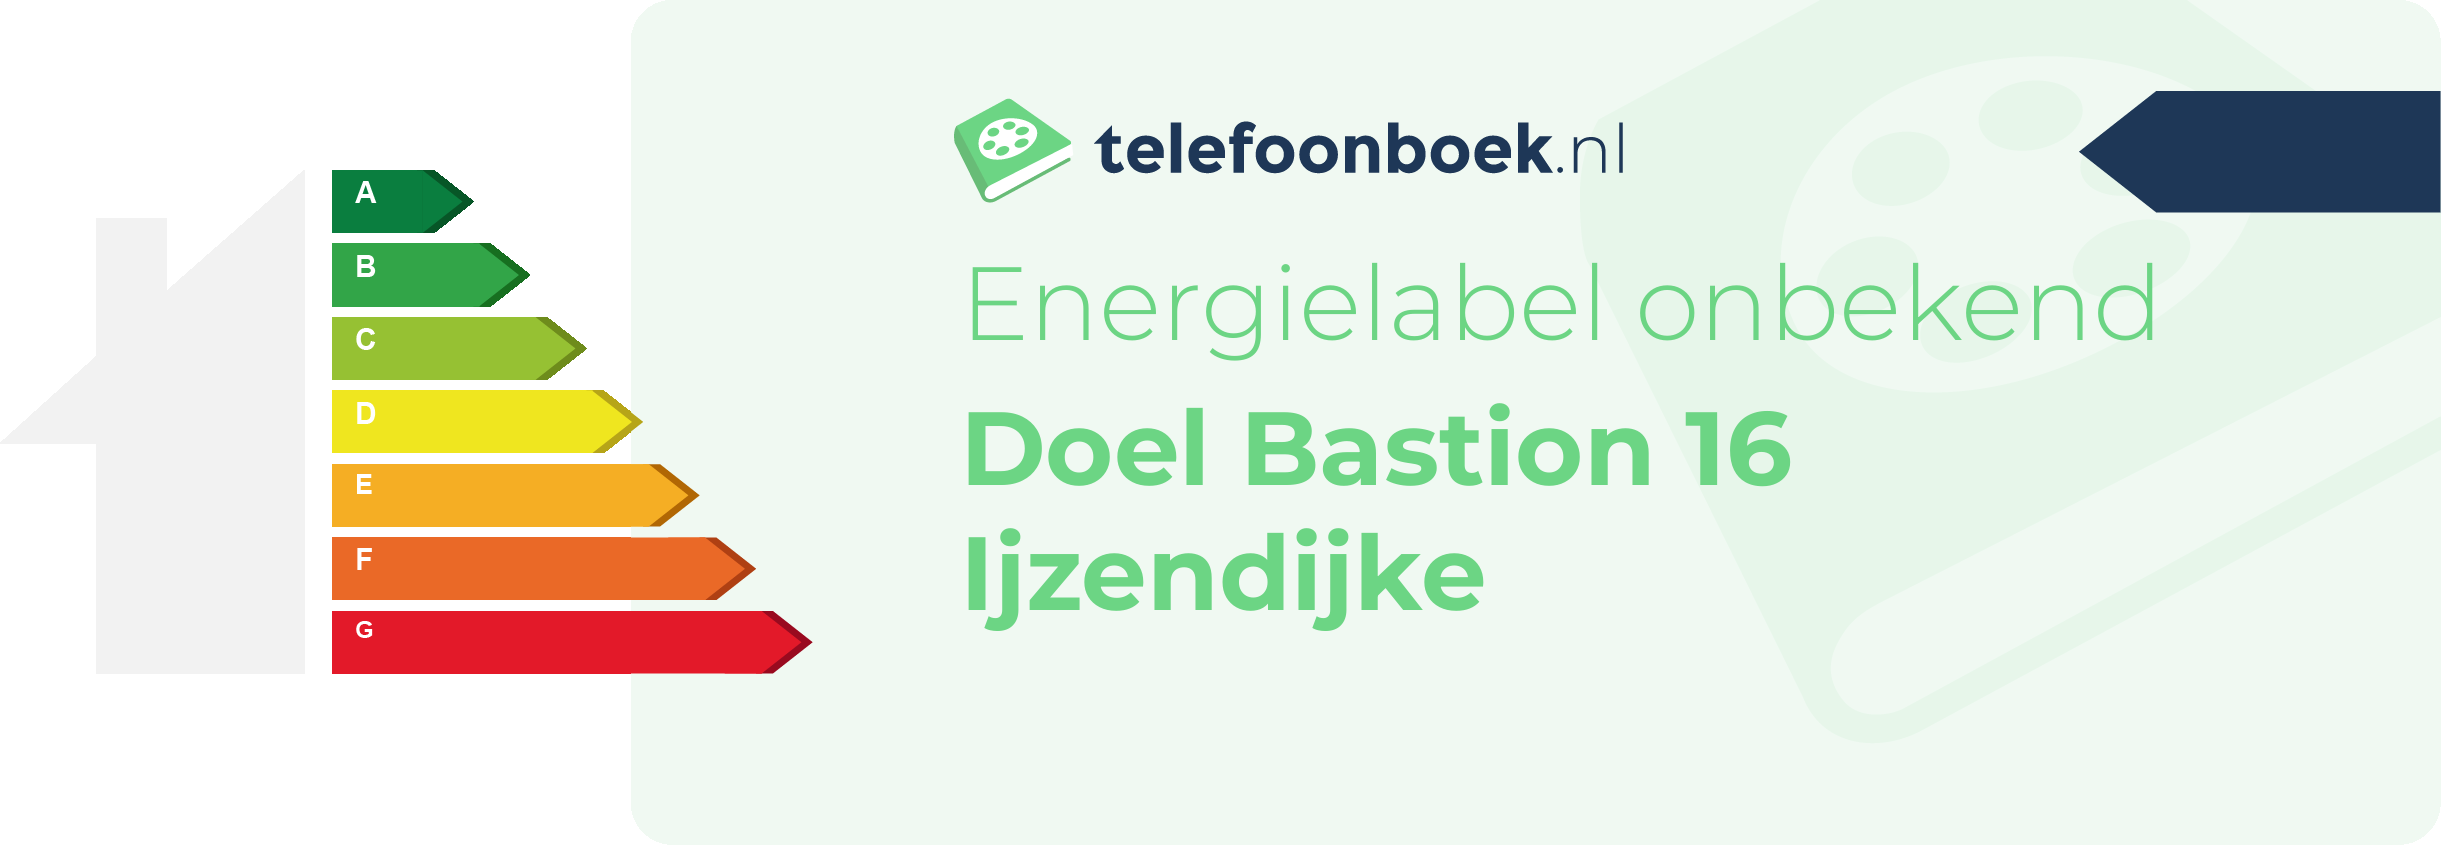 Energielabel Doel Bastion 16 Ijzendijke